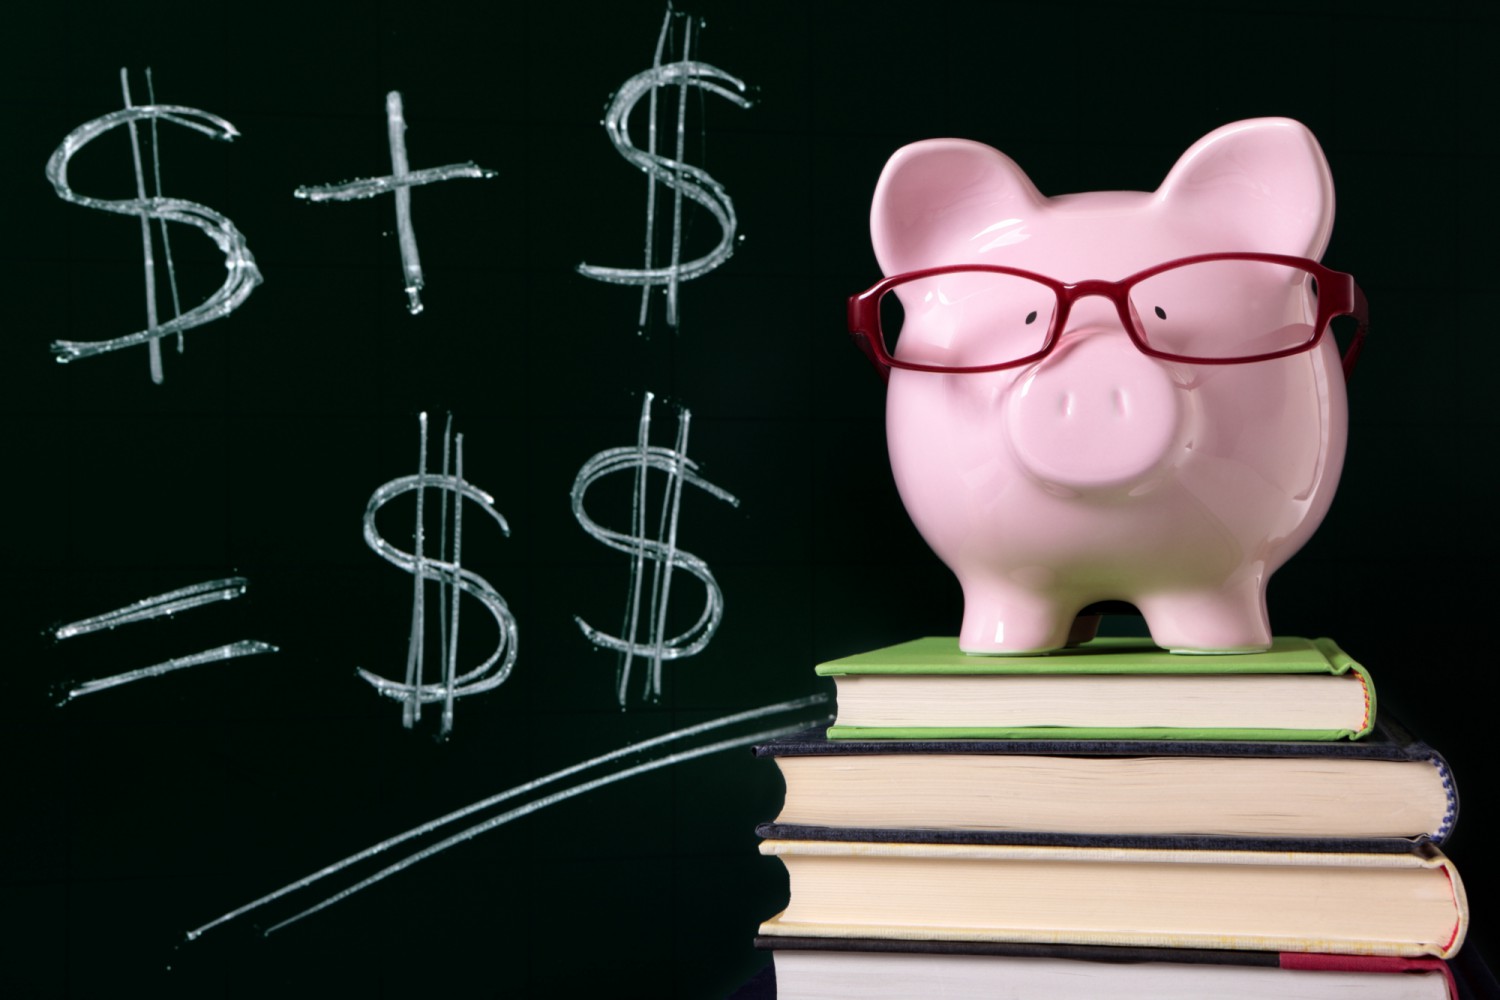 Risparmiare non basta: il budgeting e l’educazione finanziaria